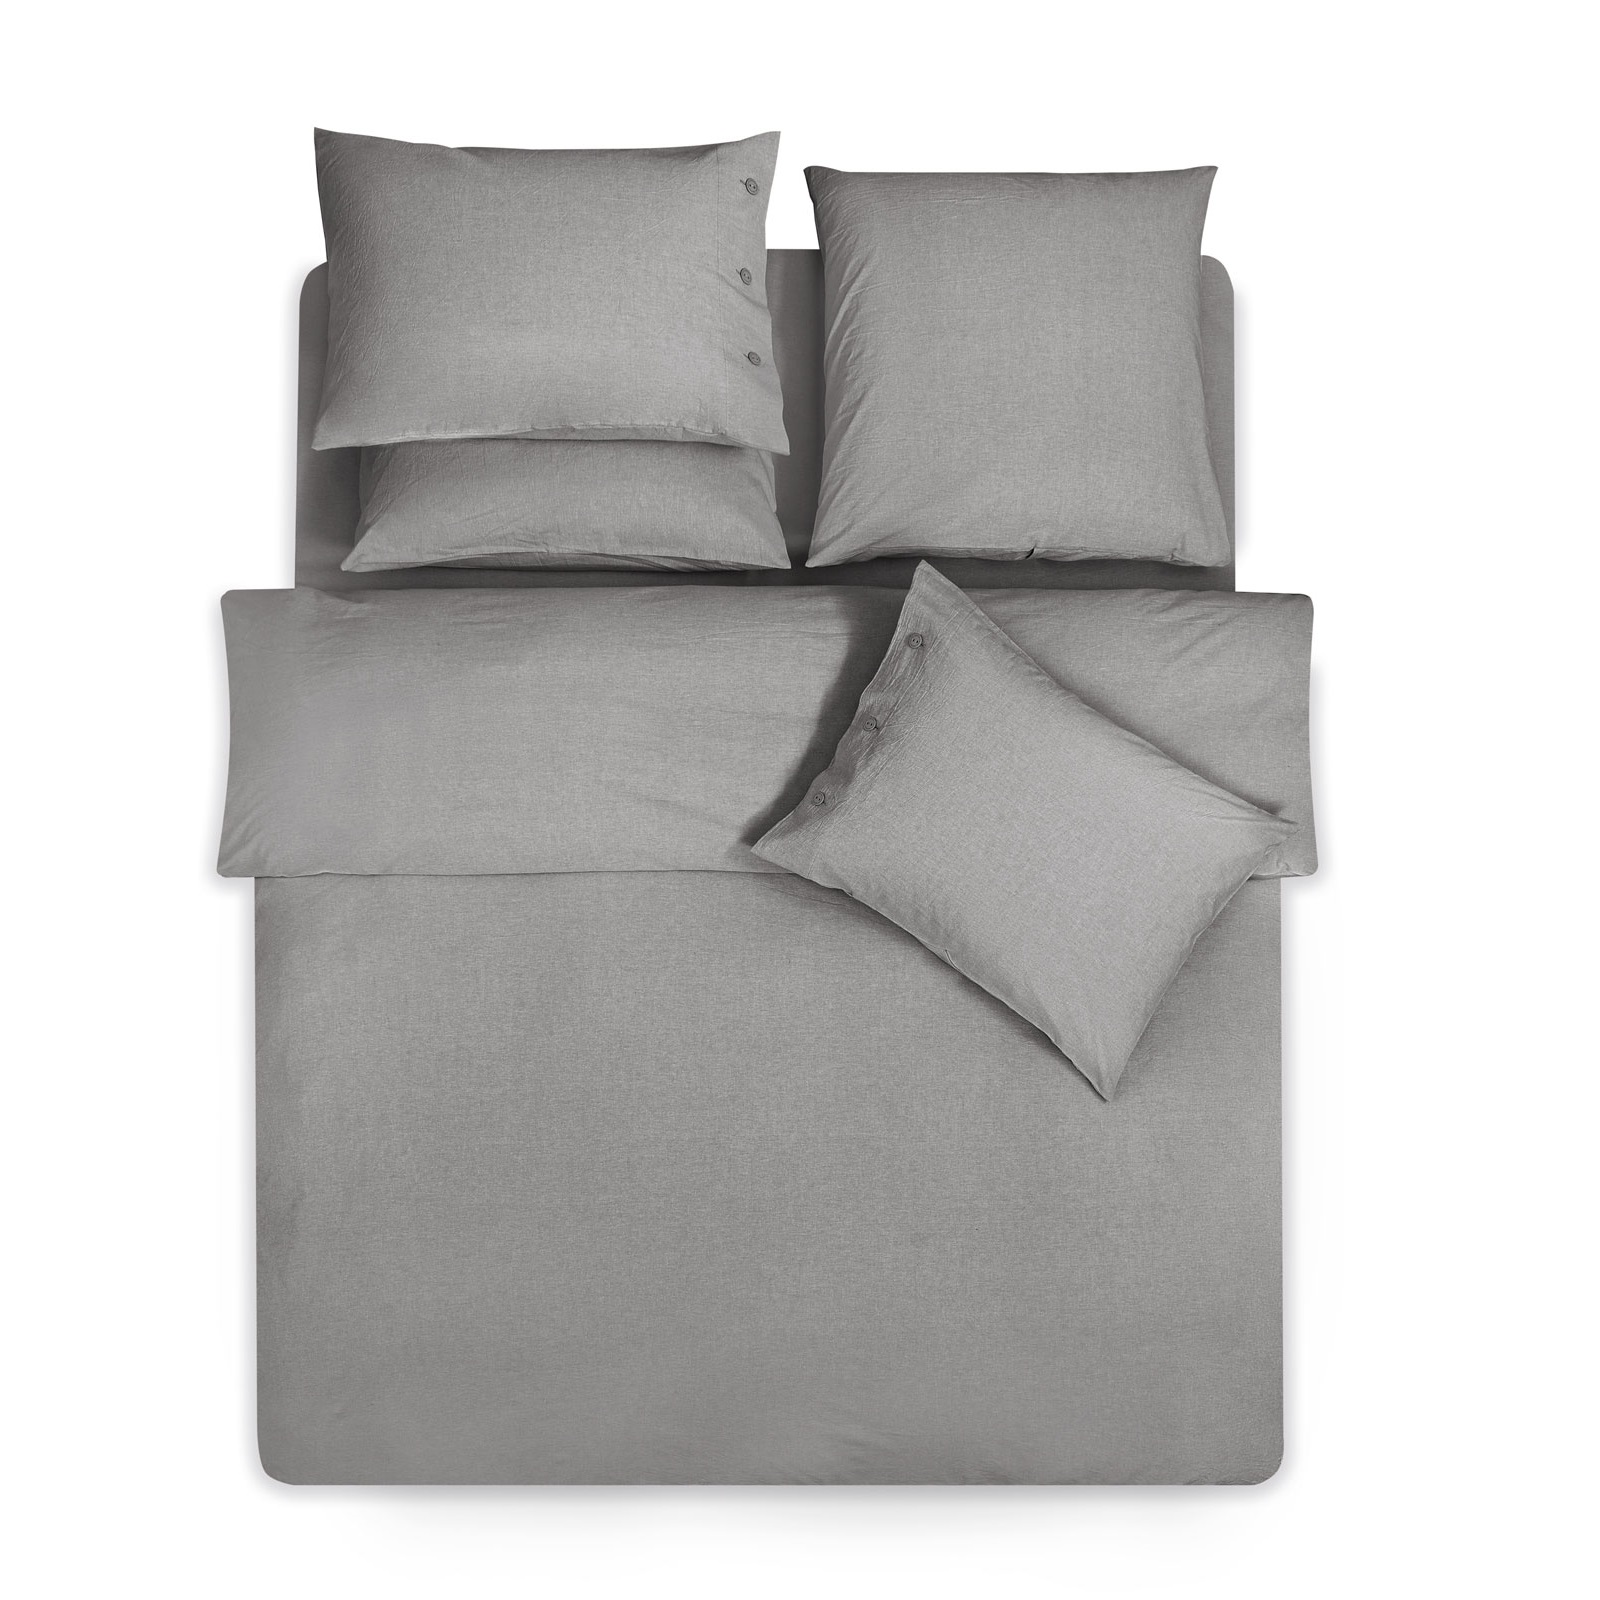 Комплект постельного белья Prime Prive Смоген Двуспальный кинг сайз тёмно-серый, размер Кинг сайз - фото 4